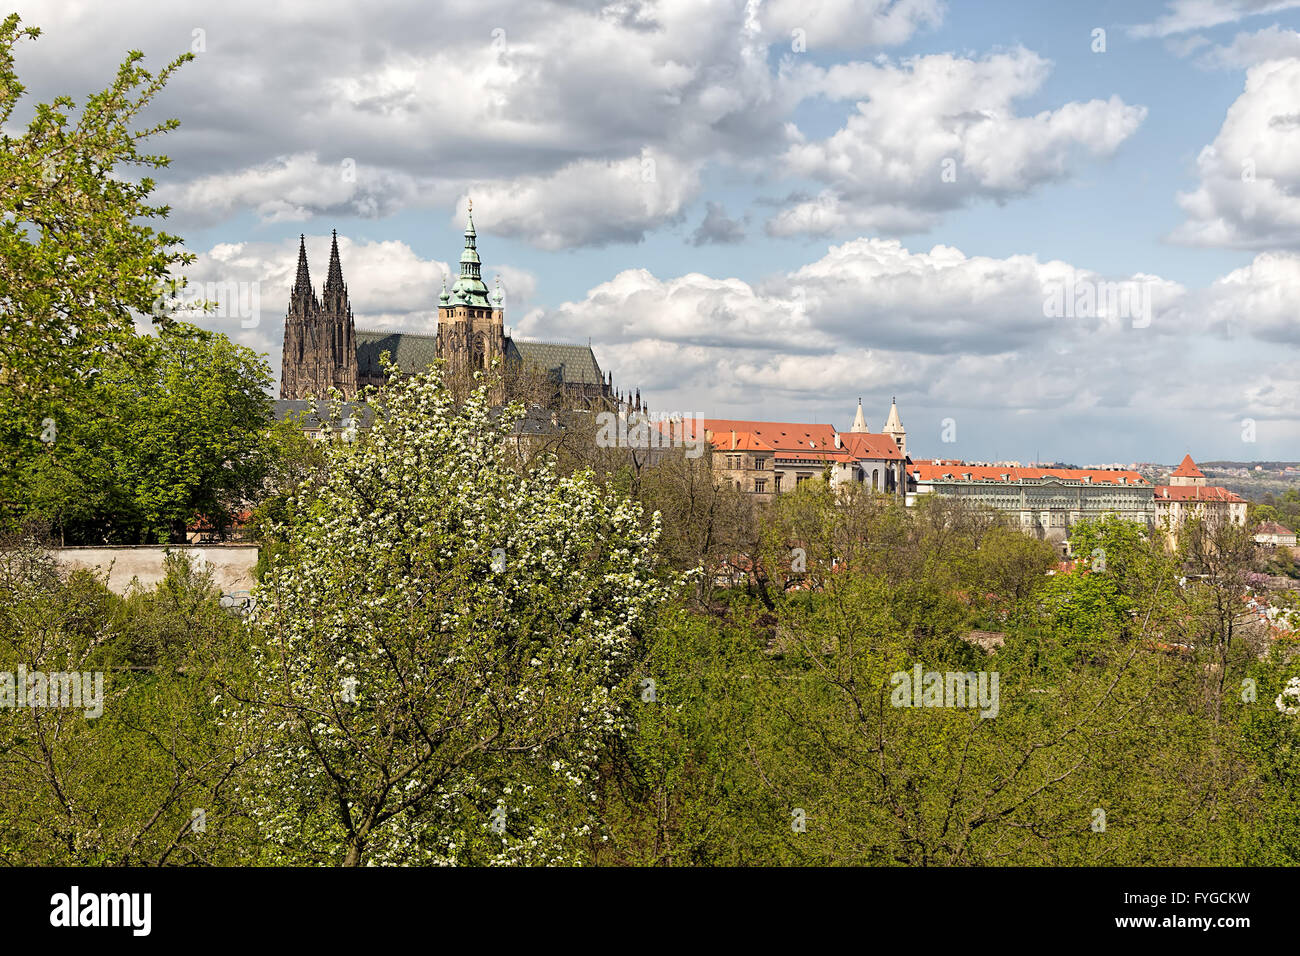 Printemps de Prague Prague panorama Hill avec le Château de Prague et l'architecture historique. Concept de l'Europe, un voyage de tourisme Banque D'Images